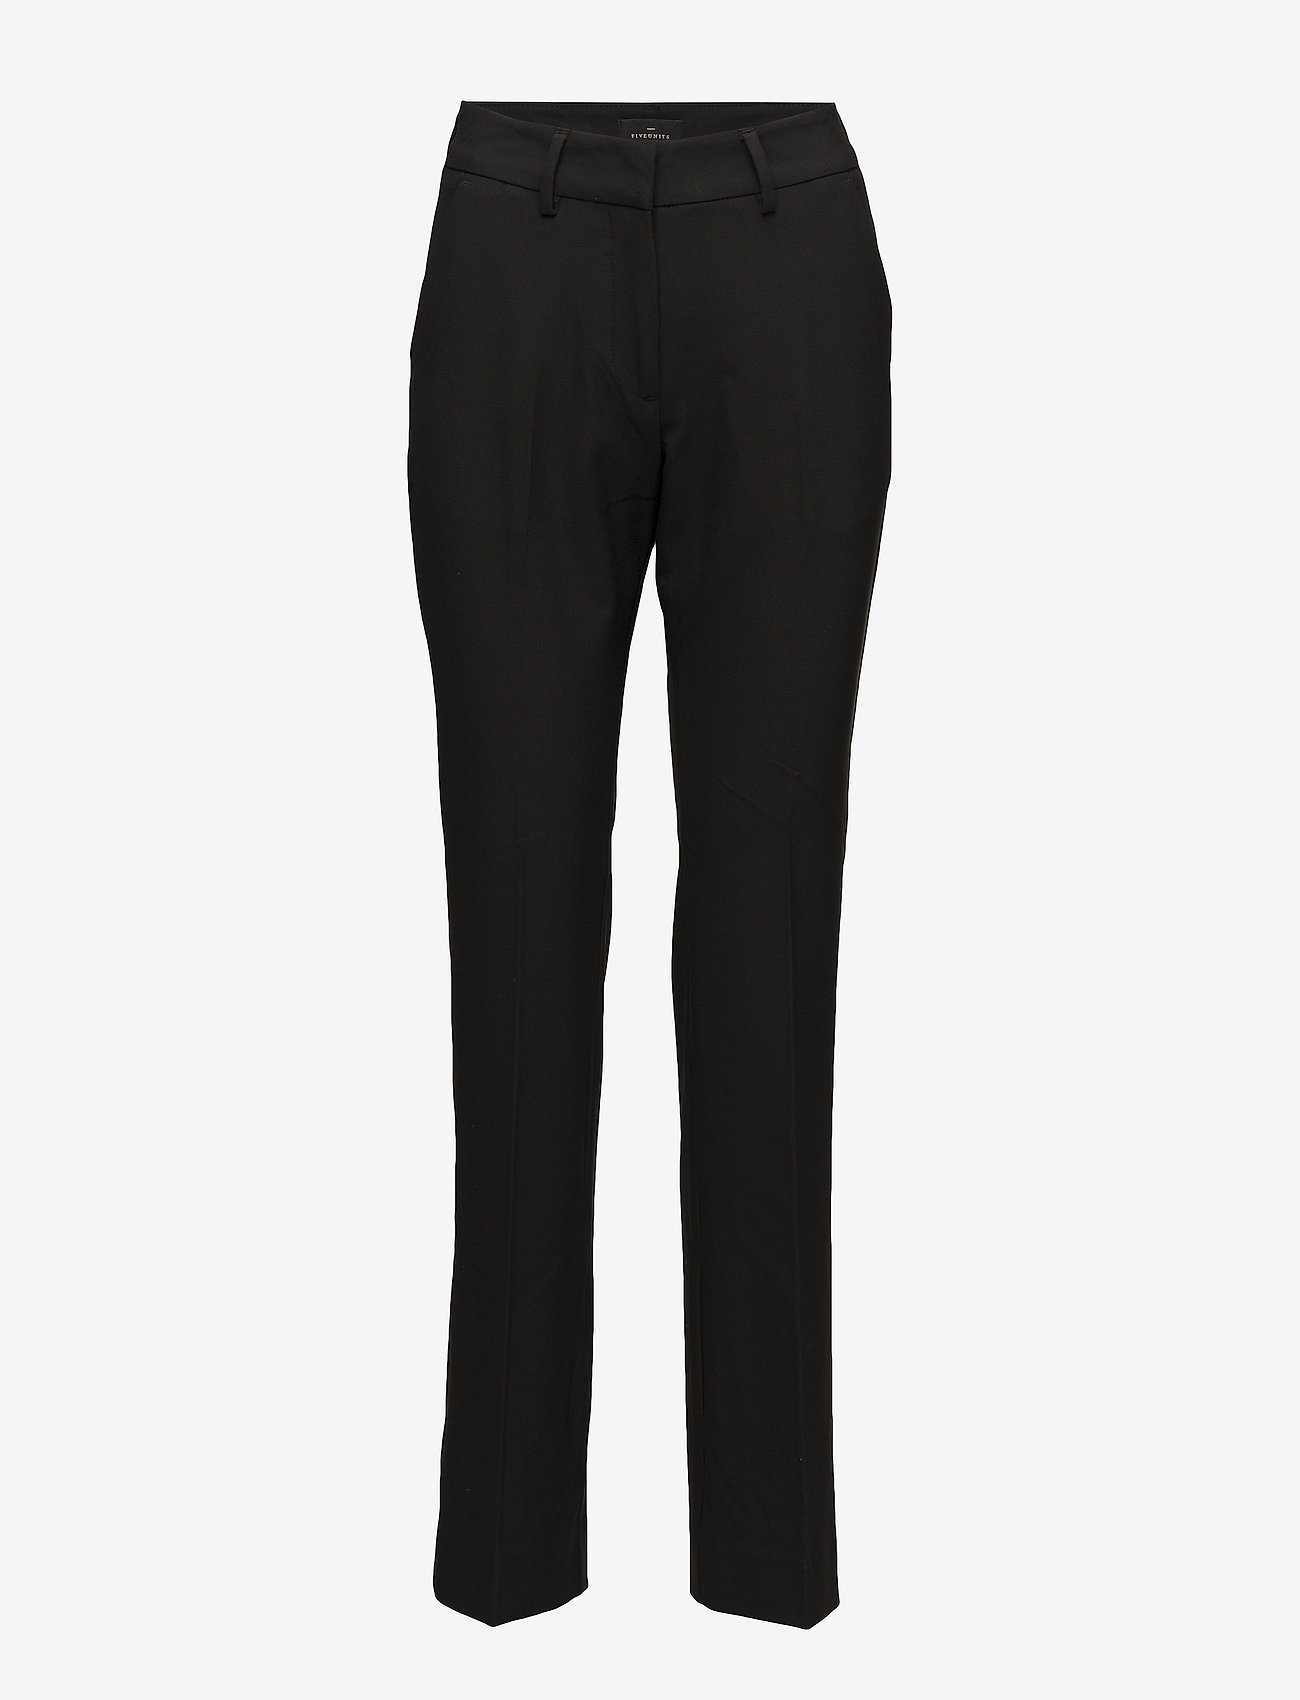 FIVEUNITS Clara 285 Black Glow - Slim fit trousers | Boozt.com